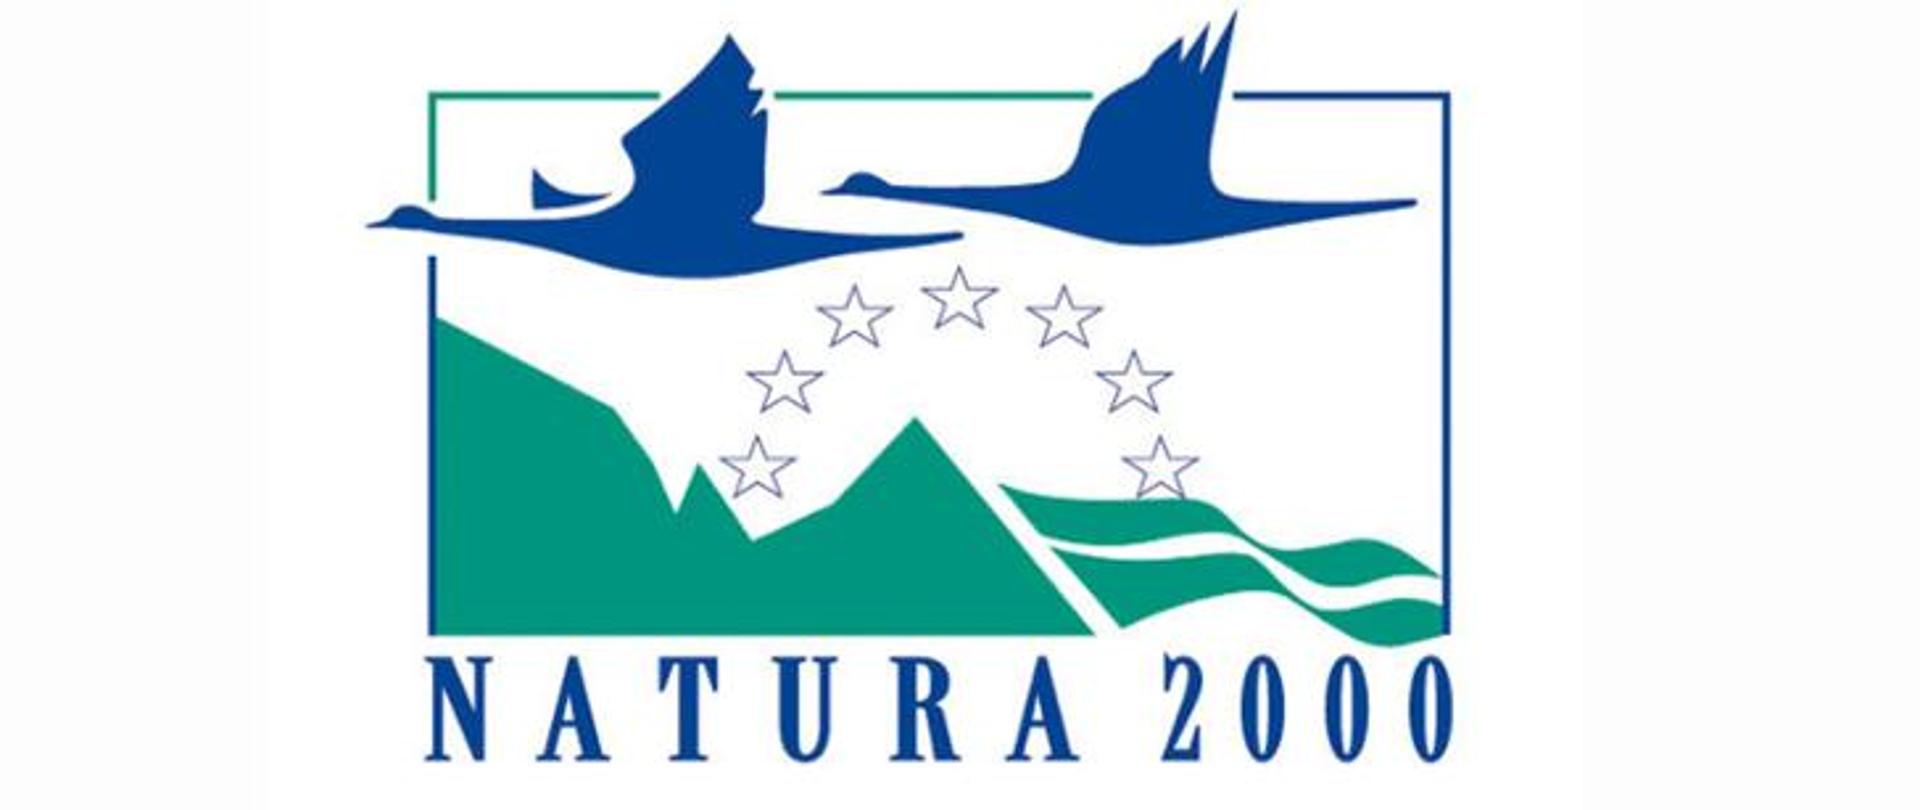 Polskie logo sieci Natura 2000